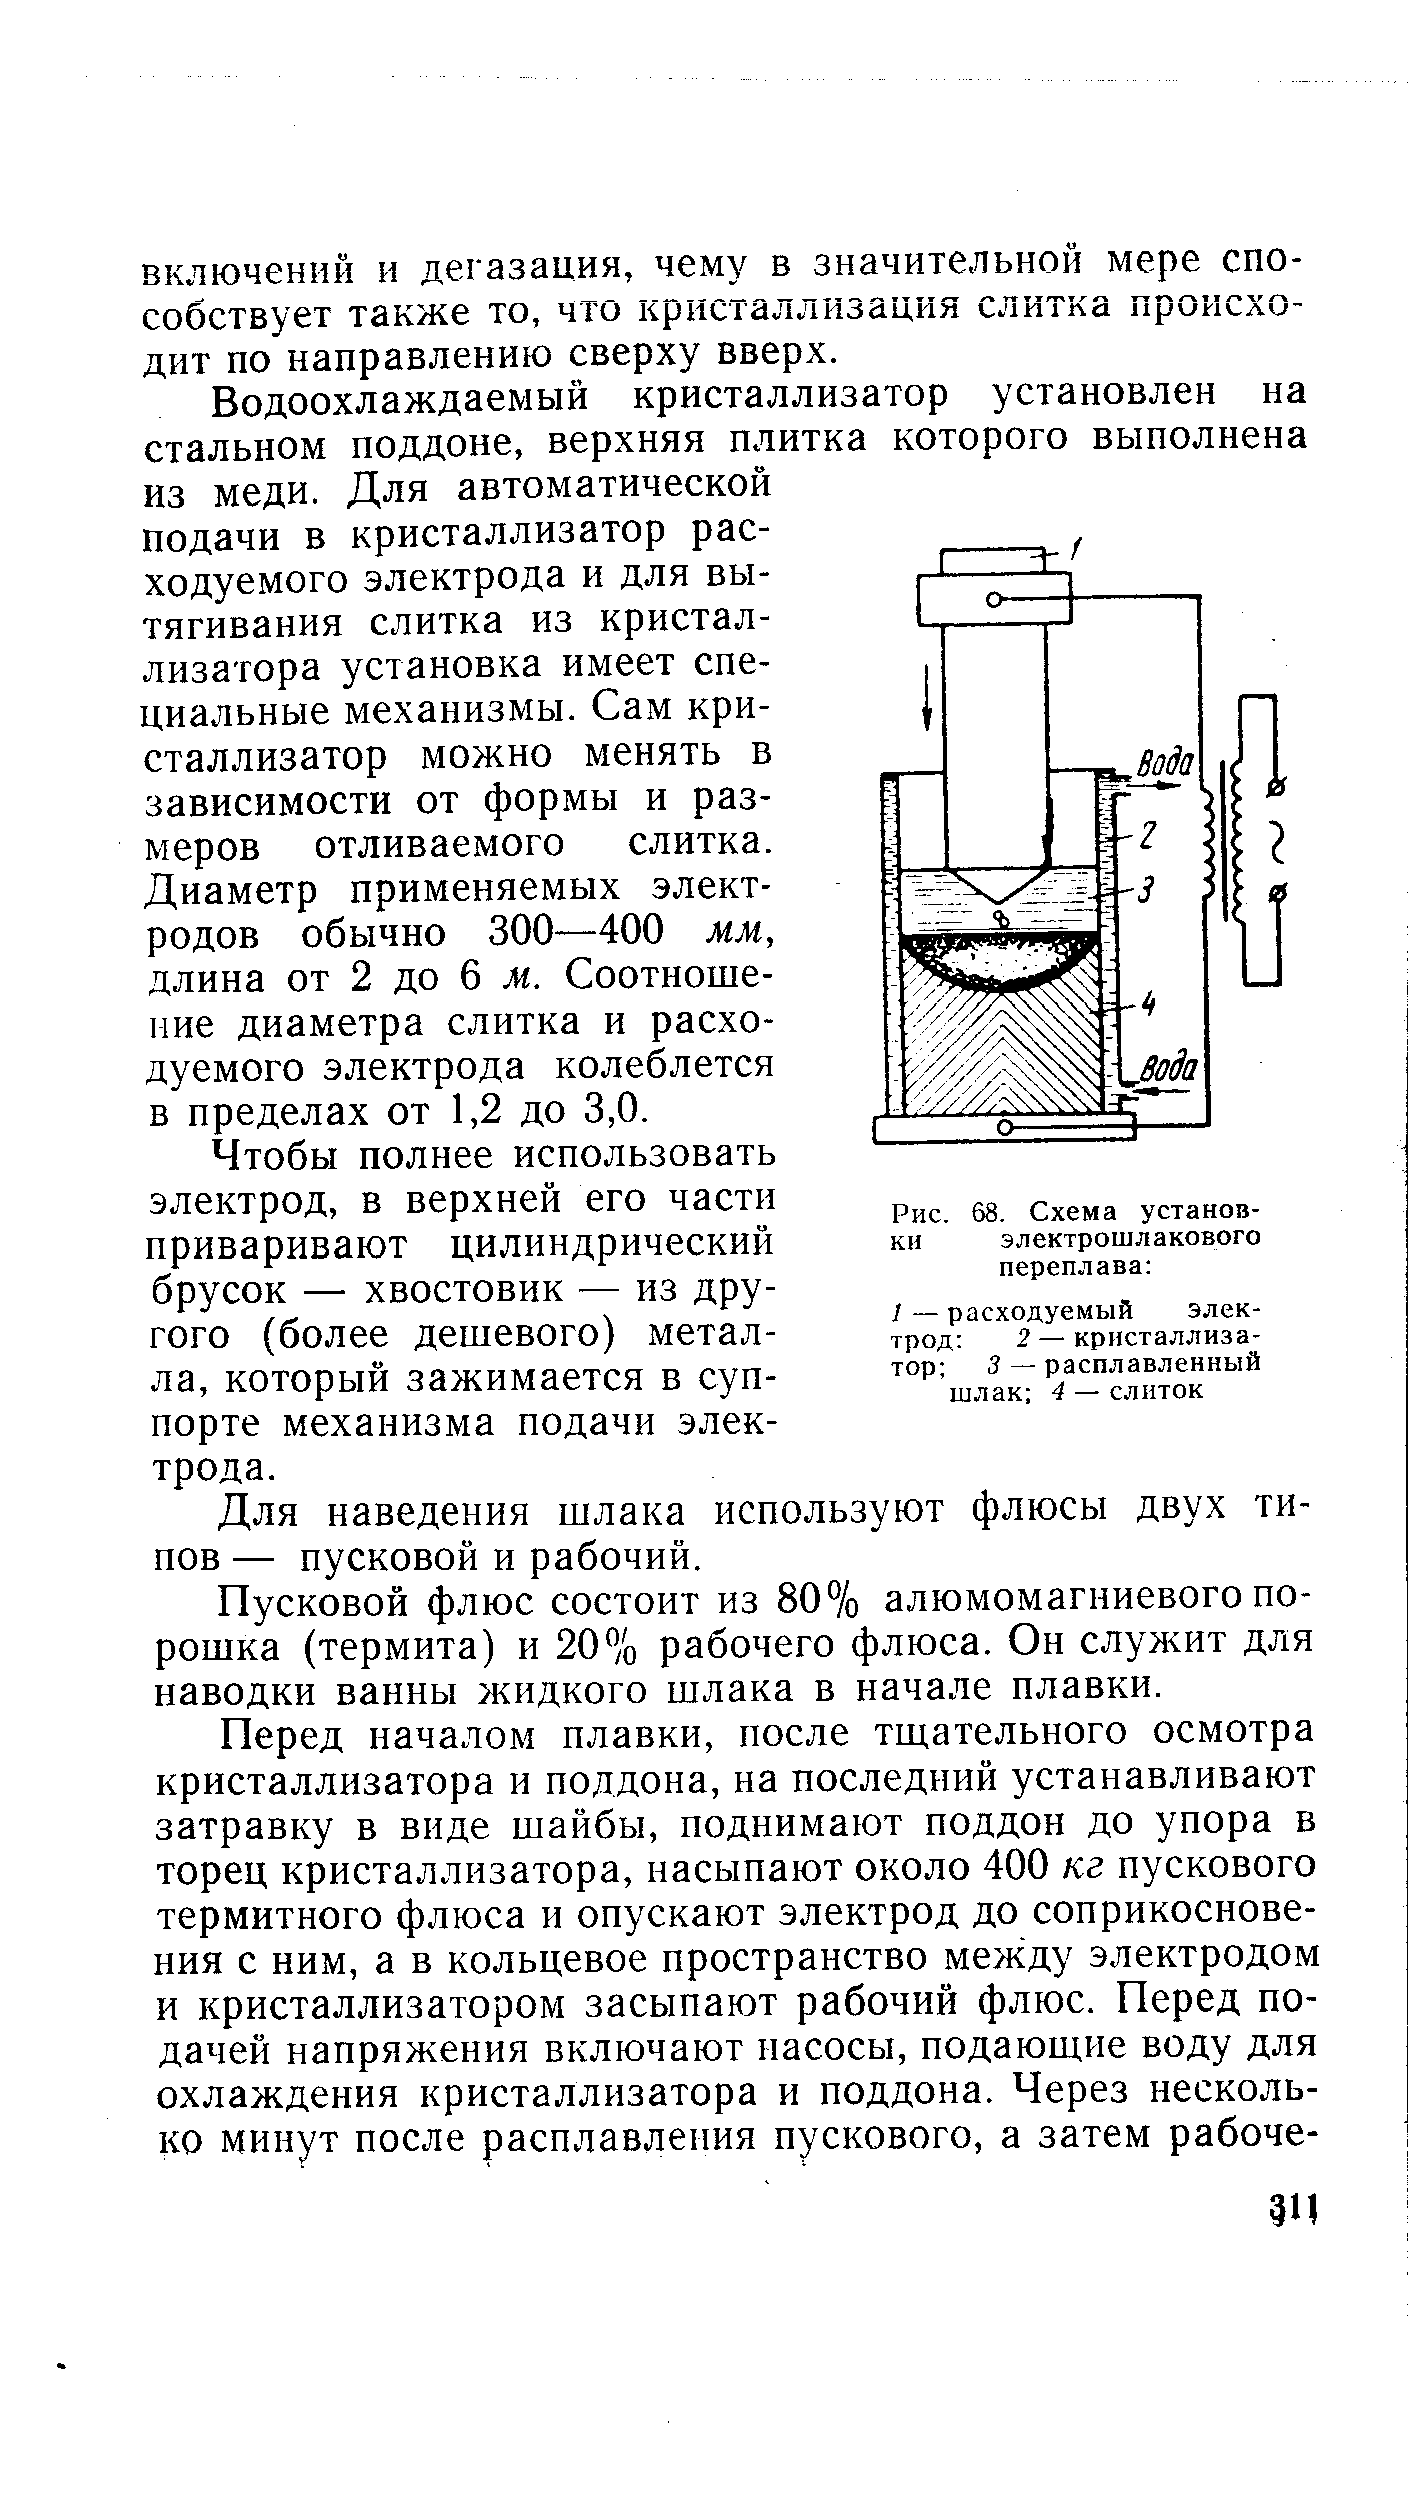 Рис. 68. Схема установки электрошлакового переплава 
